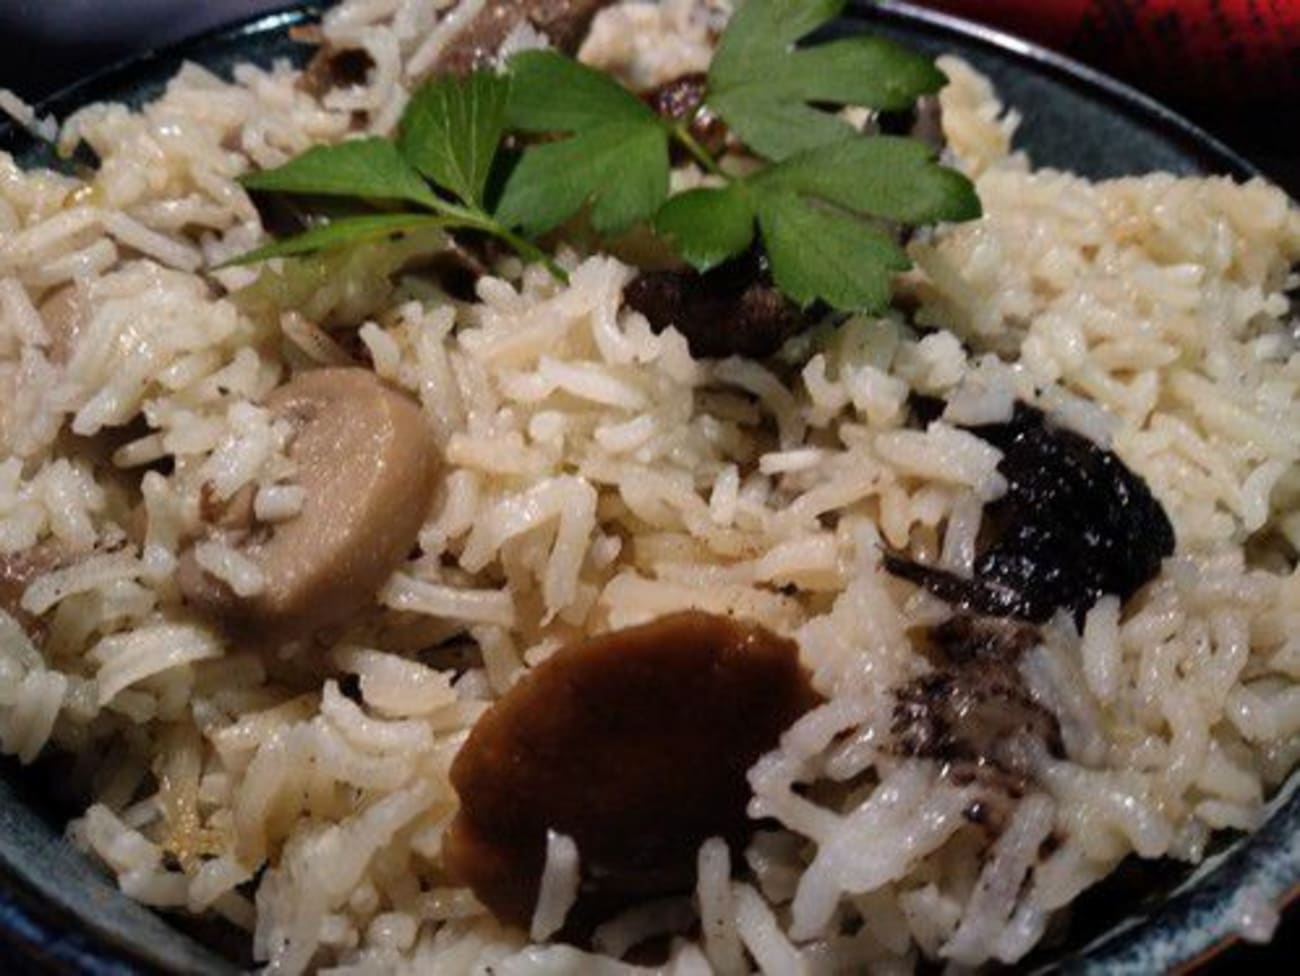 La cuisson du riz pilaf appelé aussi riz au gras - Recette par Chef Simon